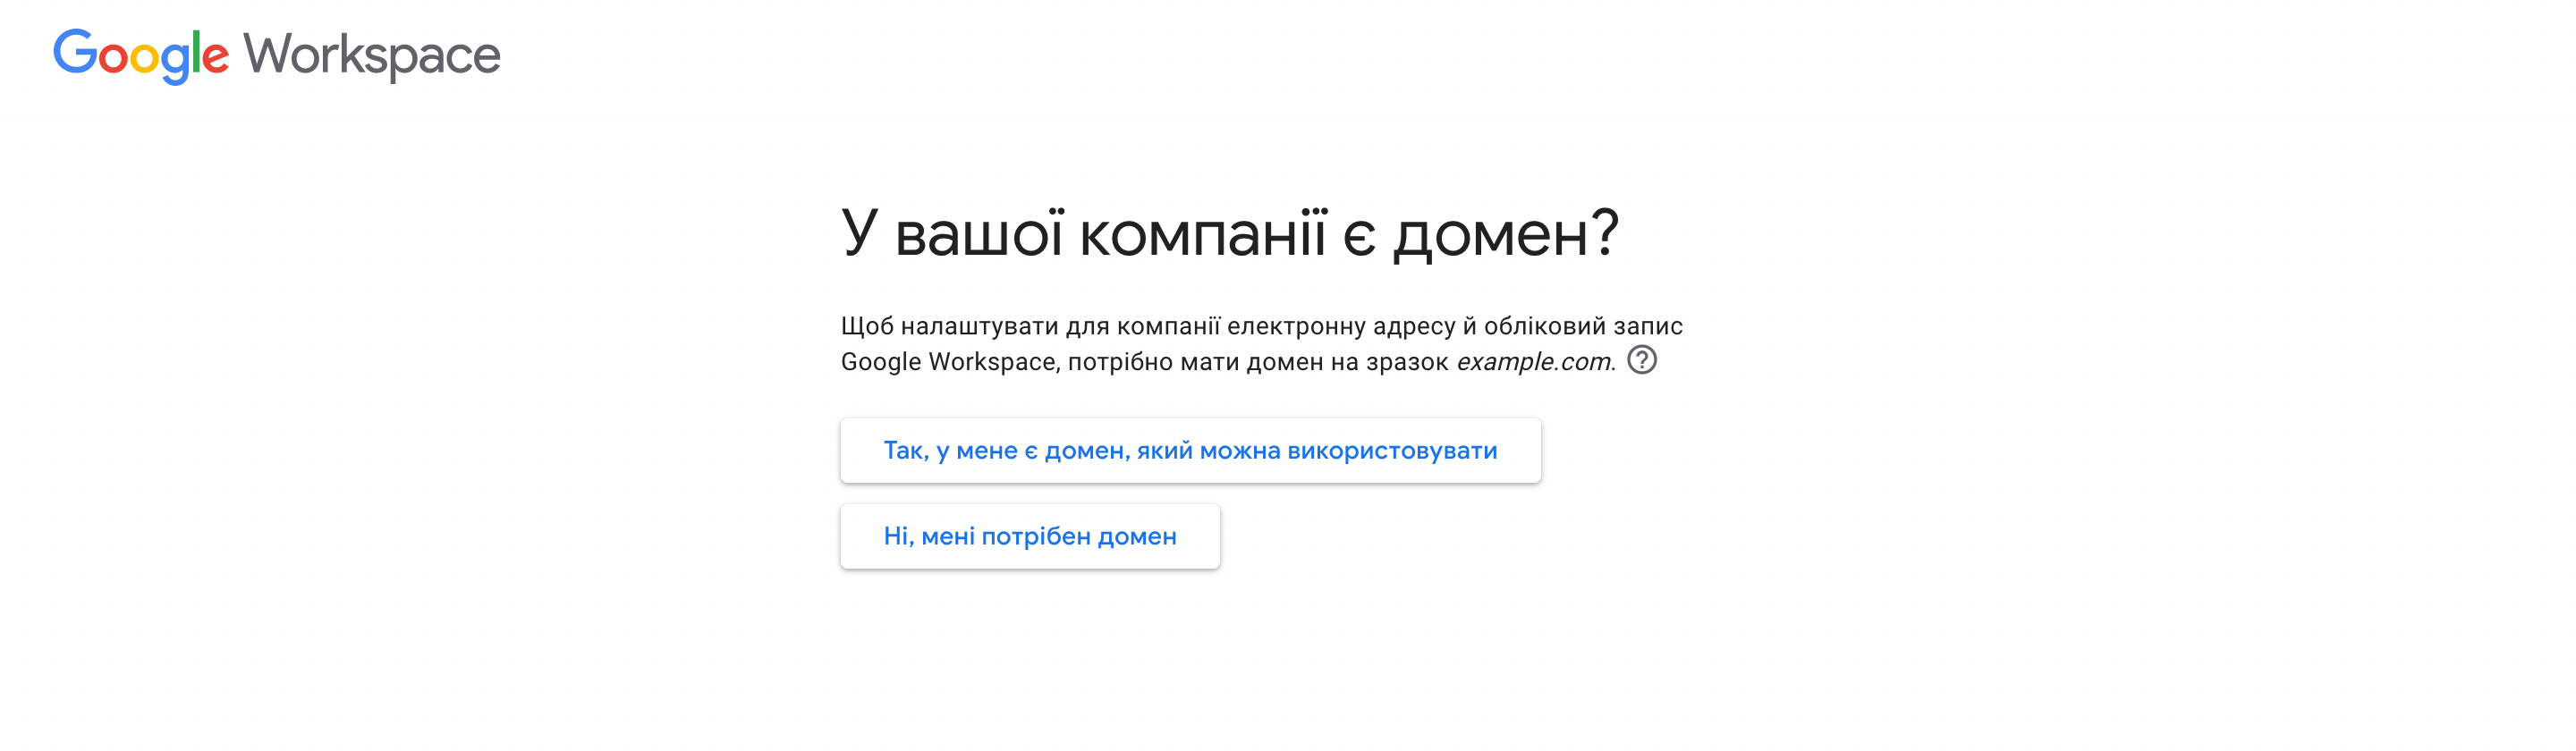 Пошта для домену в Україні. Відповідаємо, чи є у нас домен для пошти.